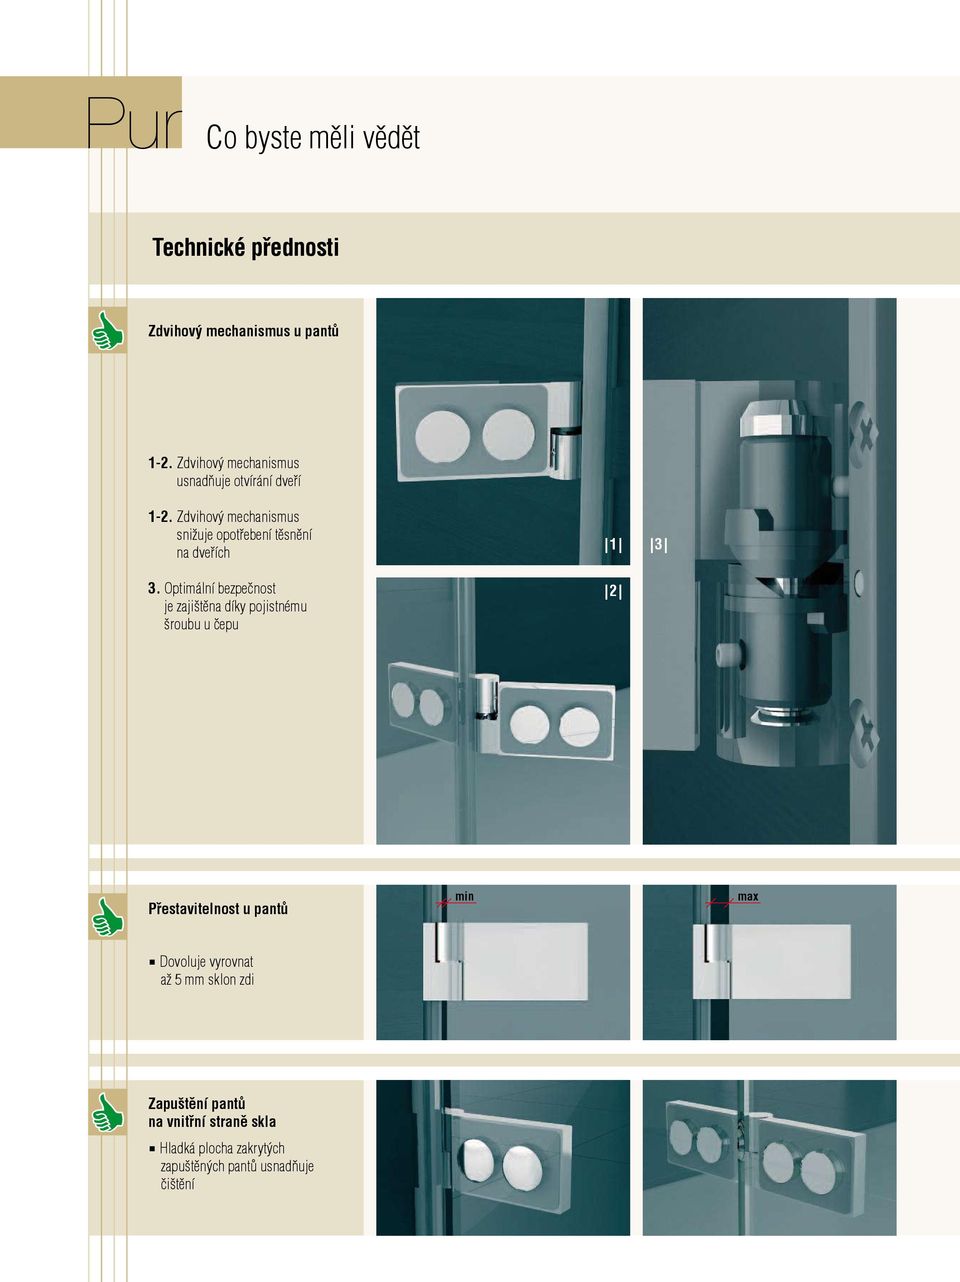 Zdvihový mechanismus snižuje opotřebení těsnění na dveřích 3.